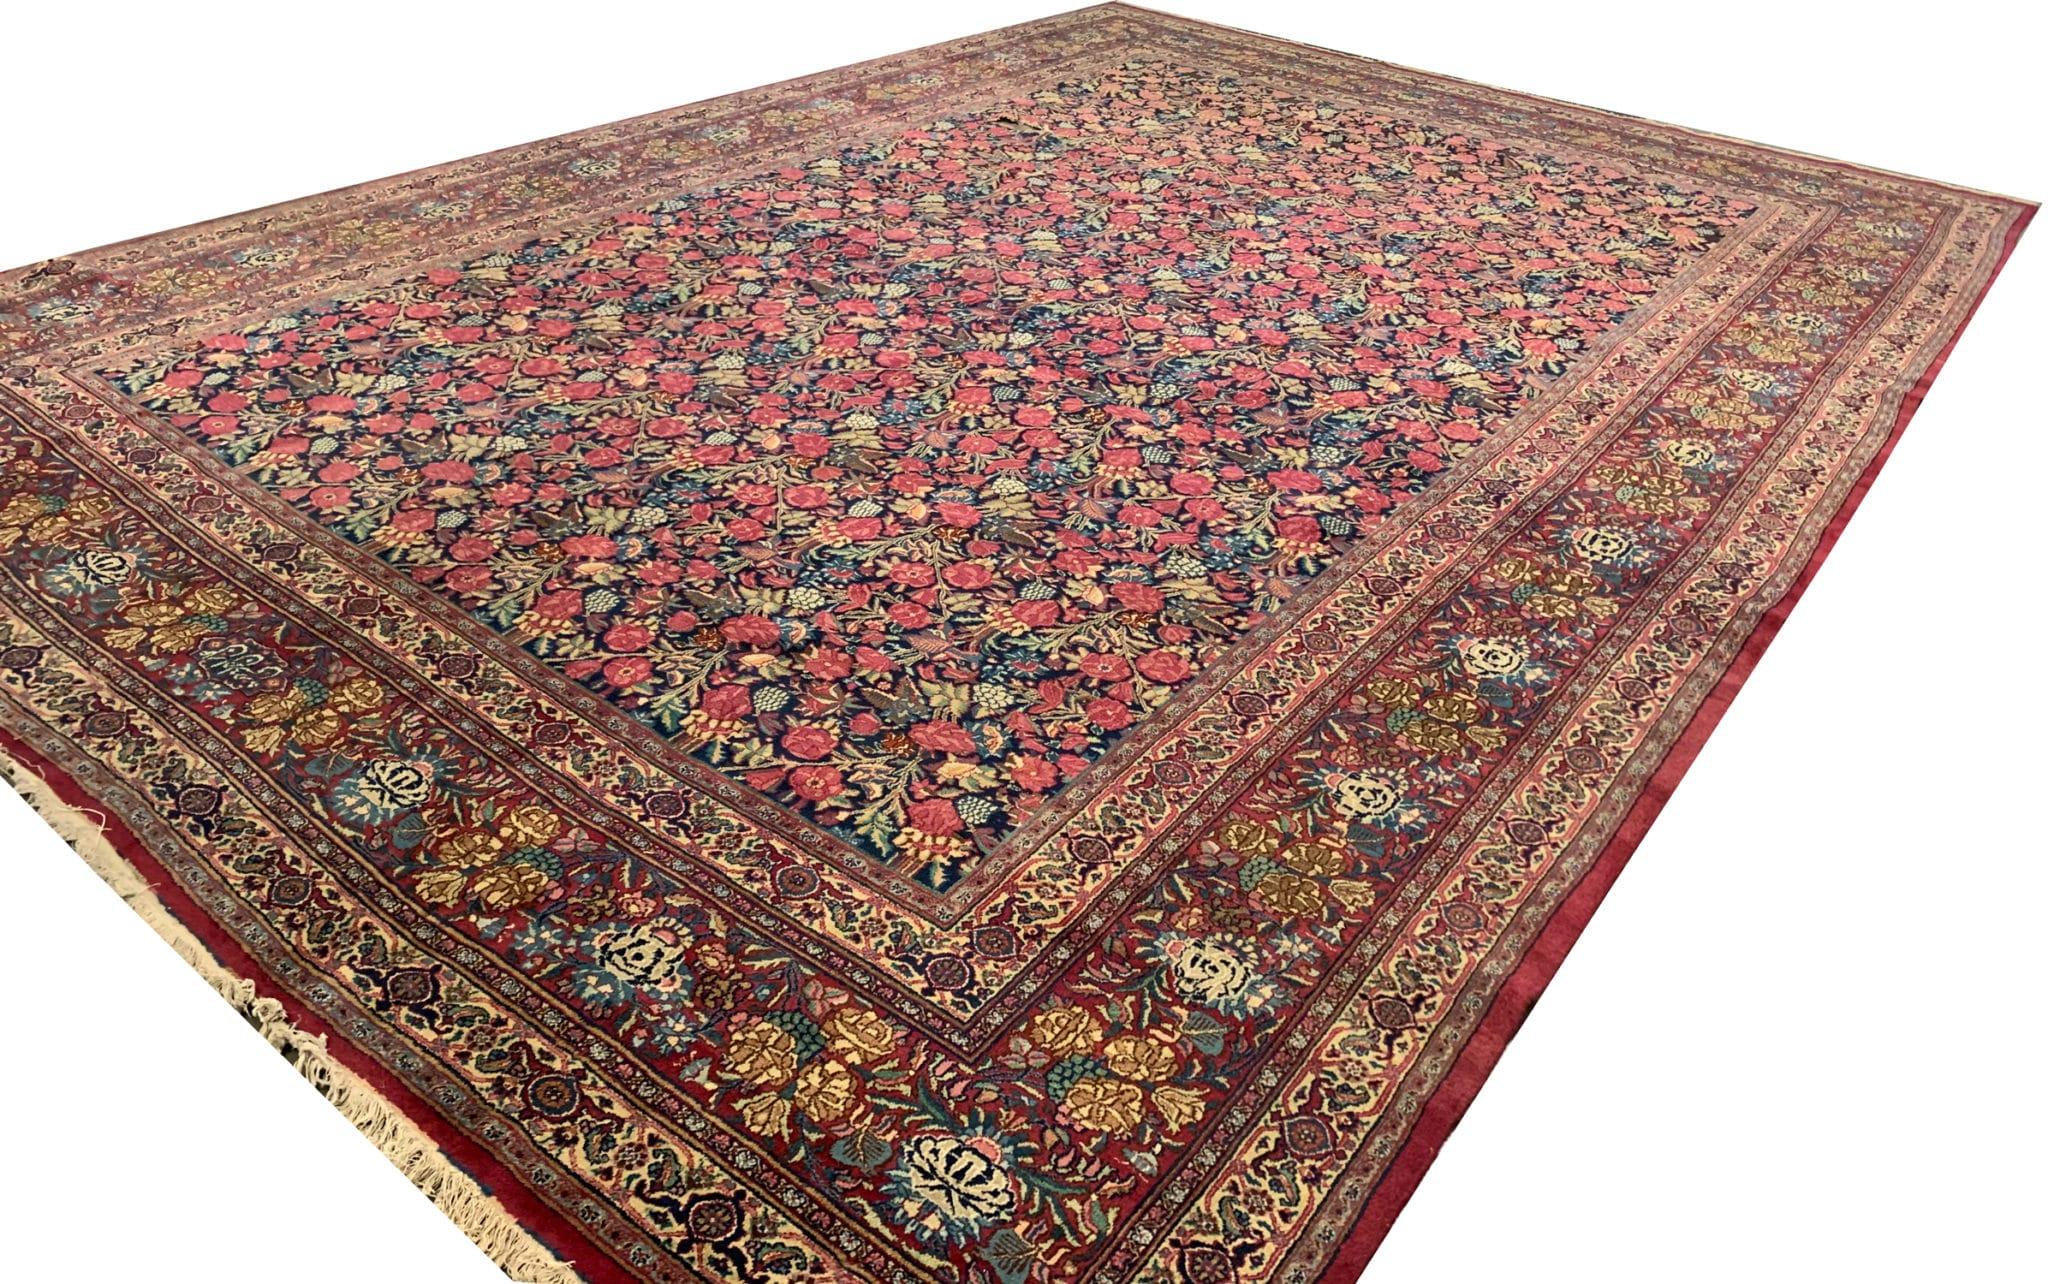 Der atemberaubende, übergroße antike Teppich mit seinem komplizierten, floralen Muster verleiht jedem Raum einen zeitlosen Charme. Mit Präzision und Sorgfalt handgeknüpft, verkörpert dieser Vintage-Teppich die Kunstfertigkeit traditioneller